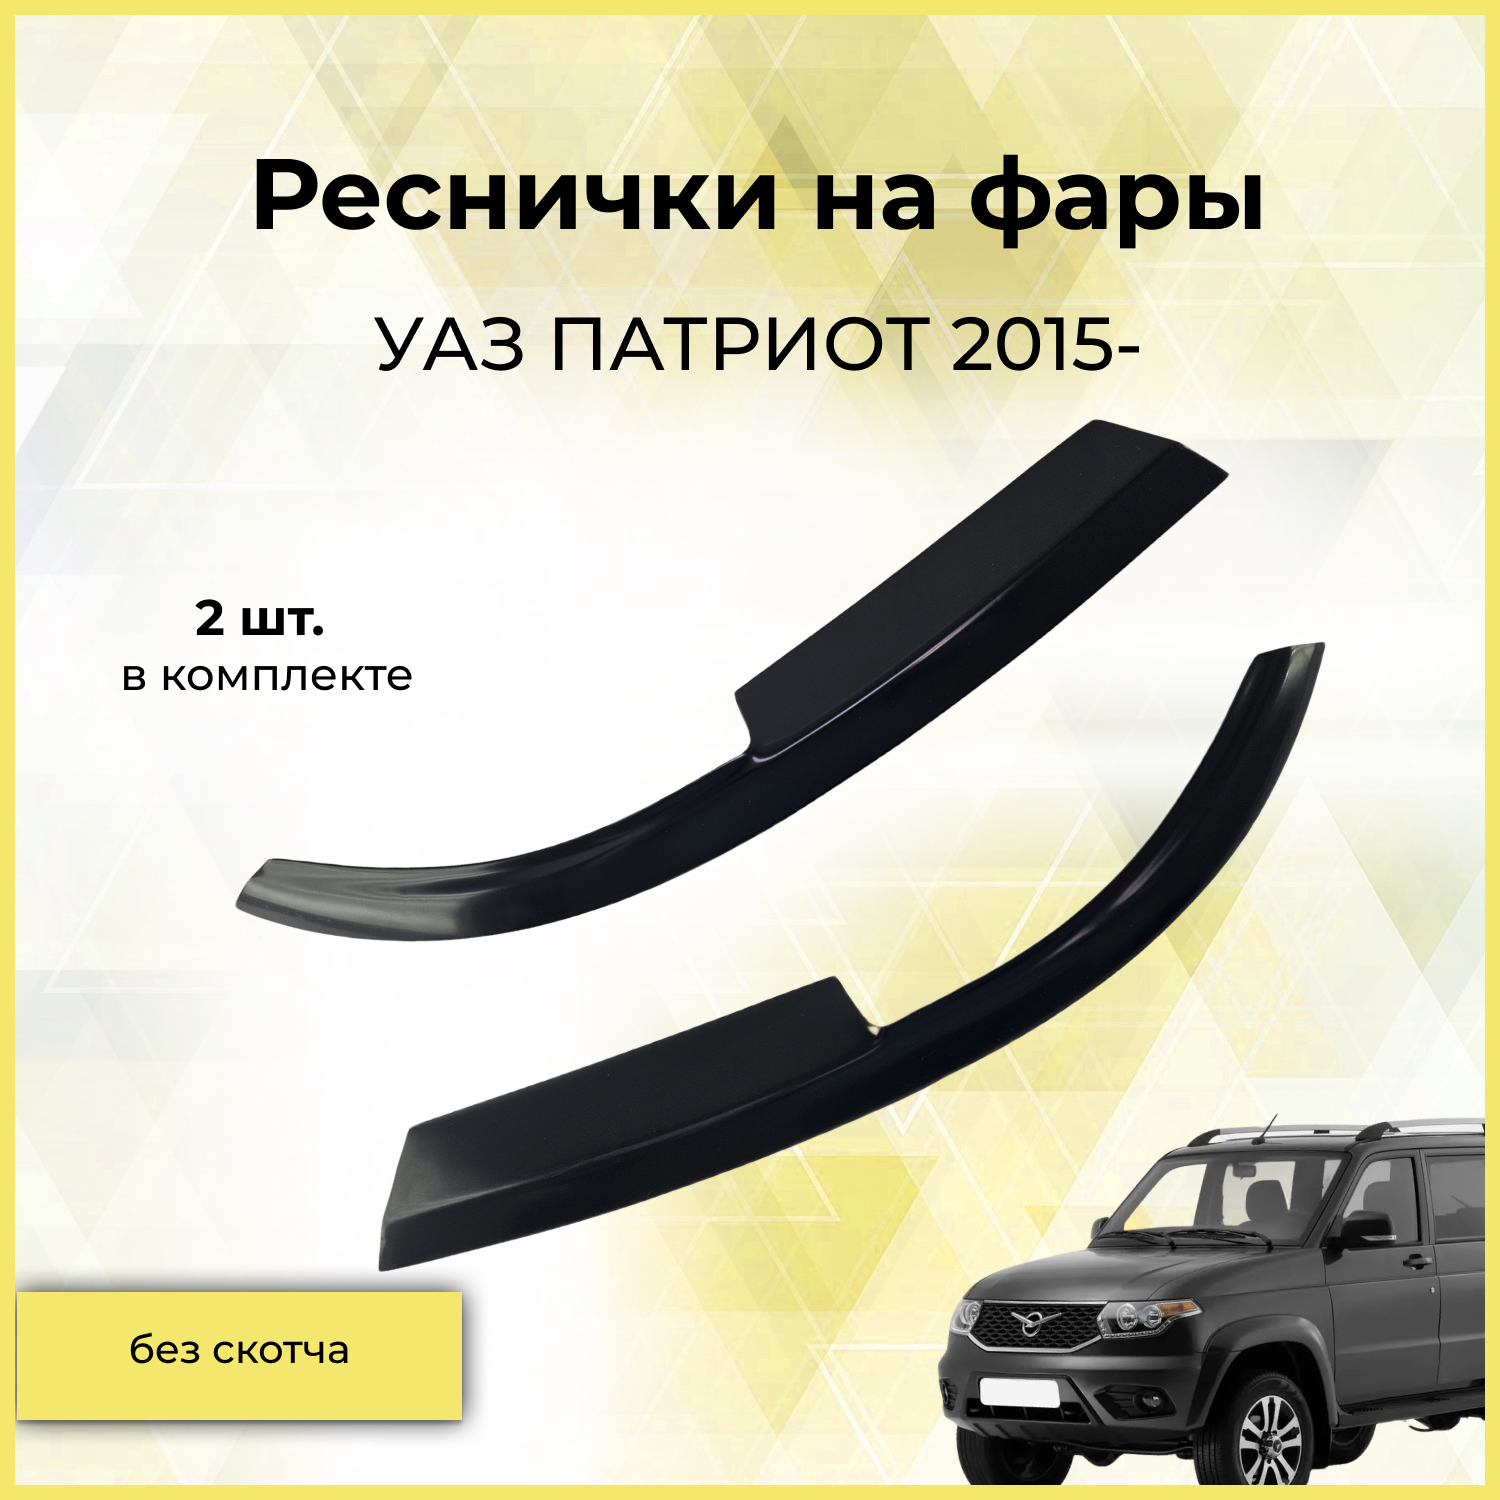 Реснички на фары / Накладки на передние фары для УАЗ патриот 2015-